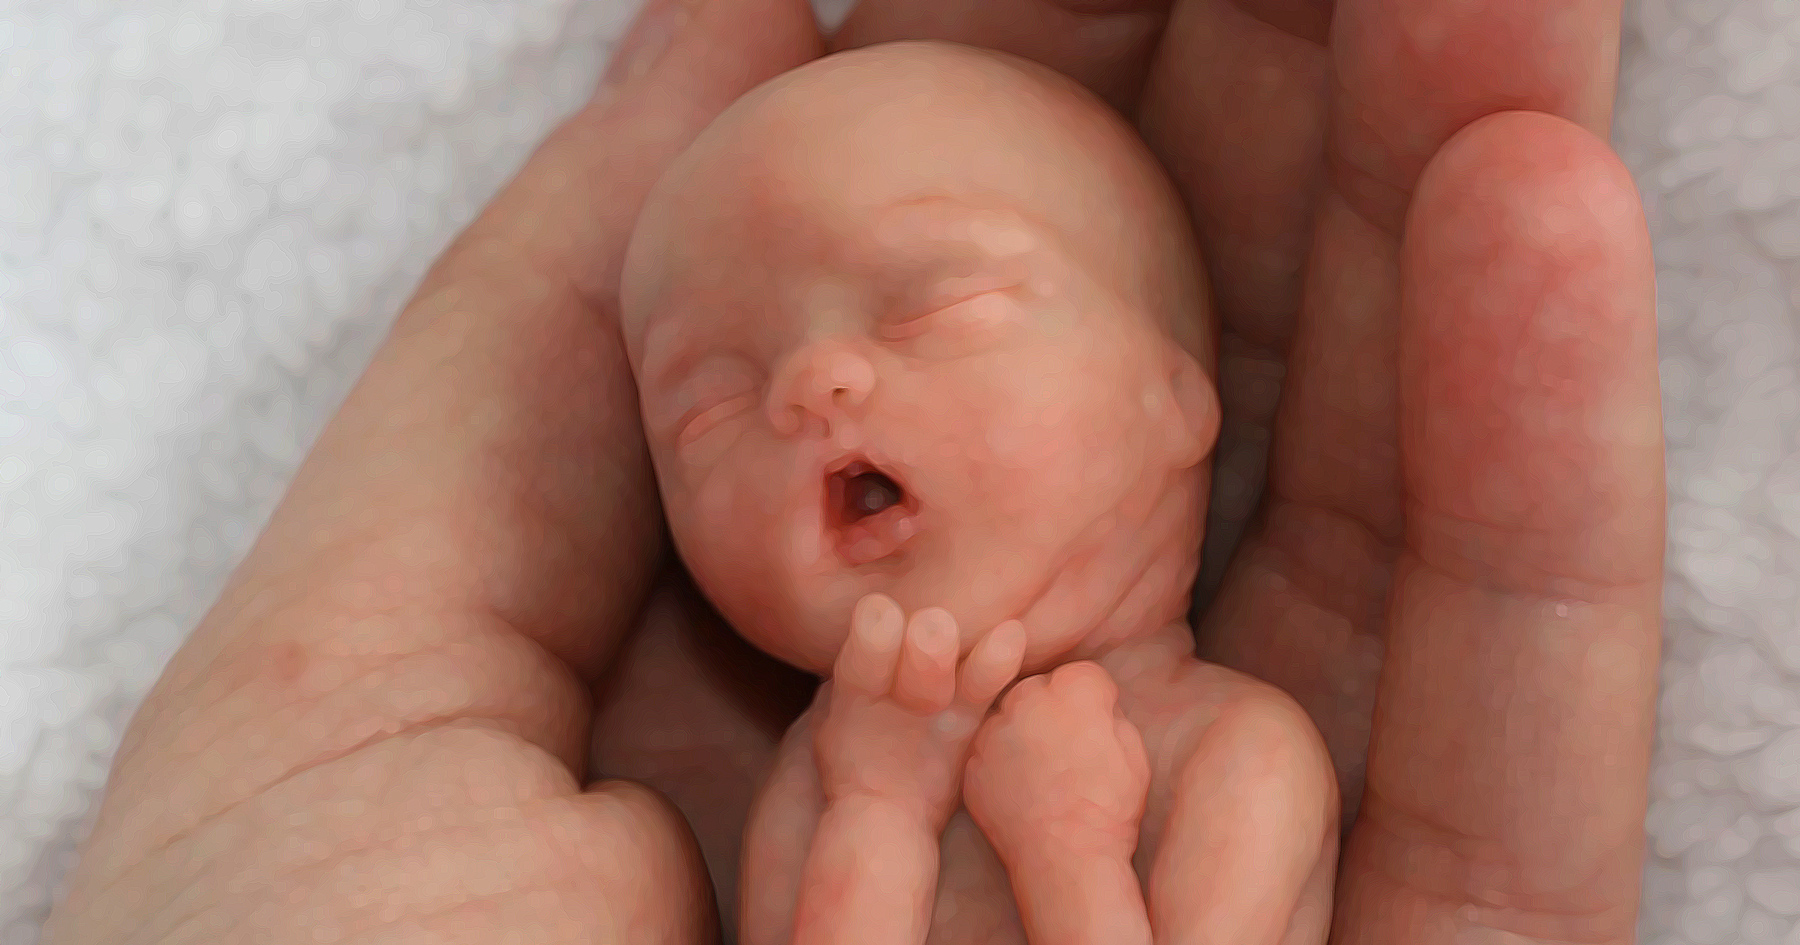 12 Week old fetus